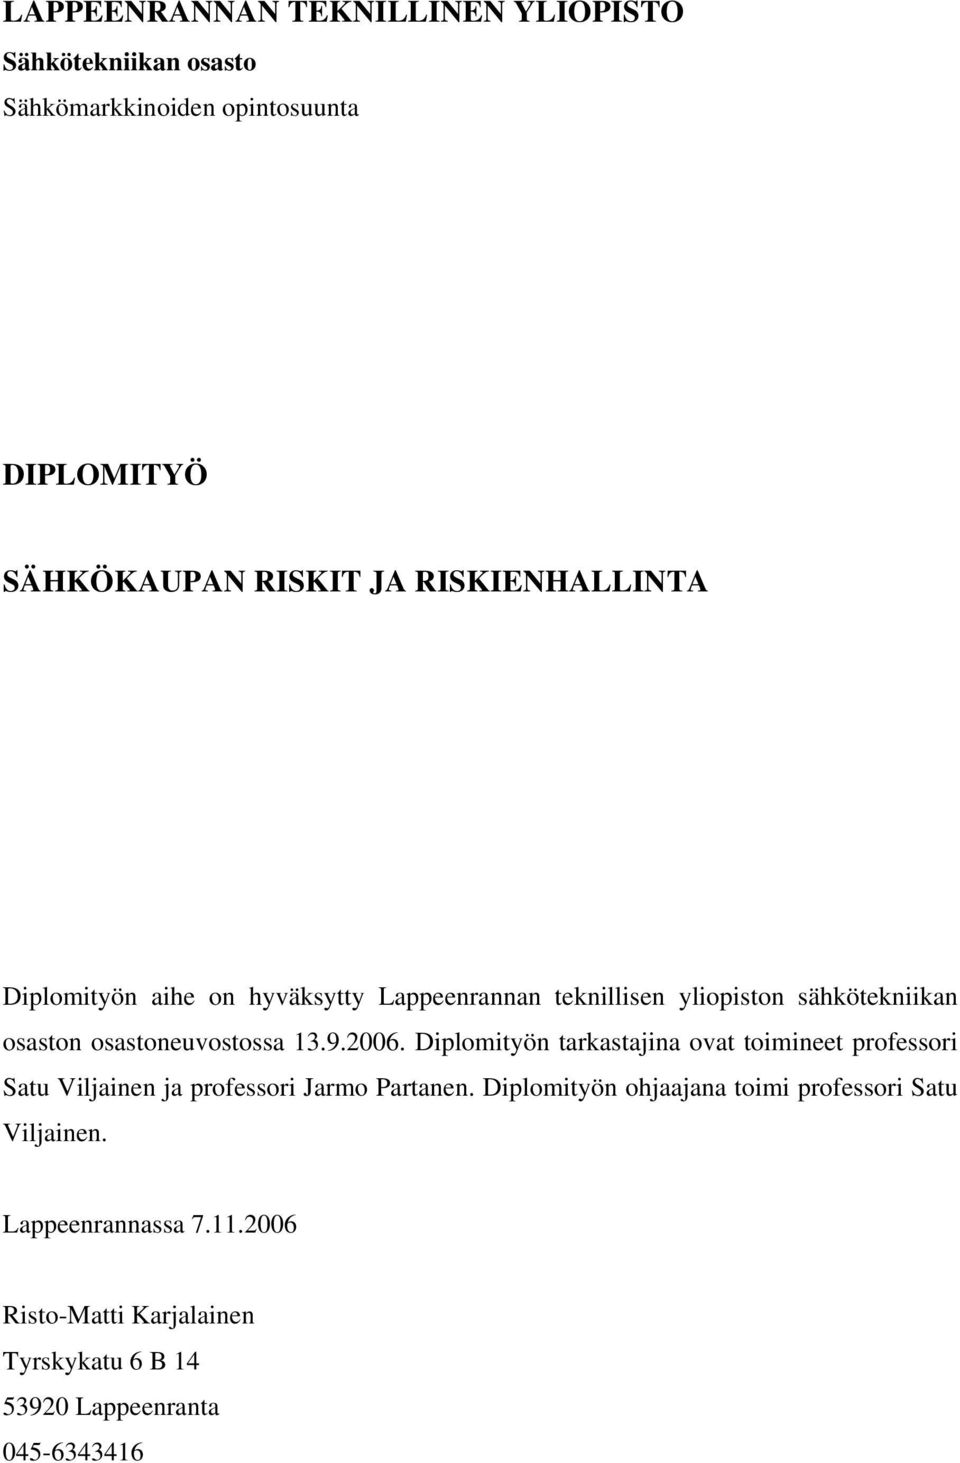 13.9.2006. Diplomityön tarkastajina ovat toimineet professori Satu Viljainen ja professori Jarmo Partanen.